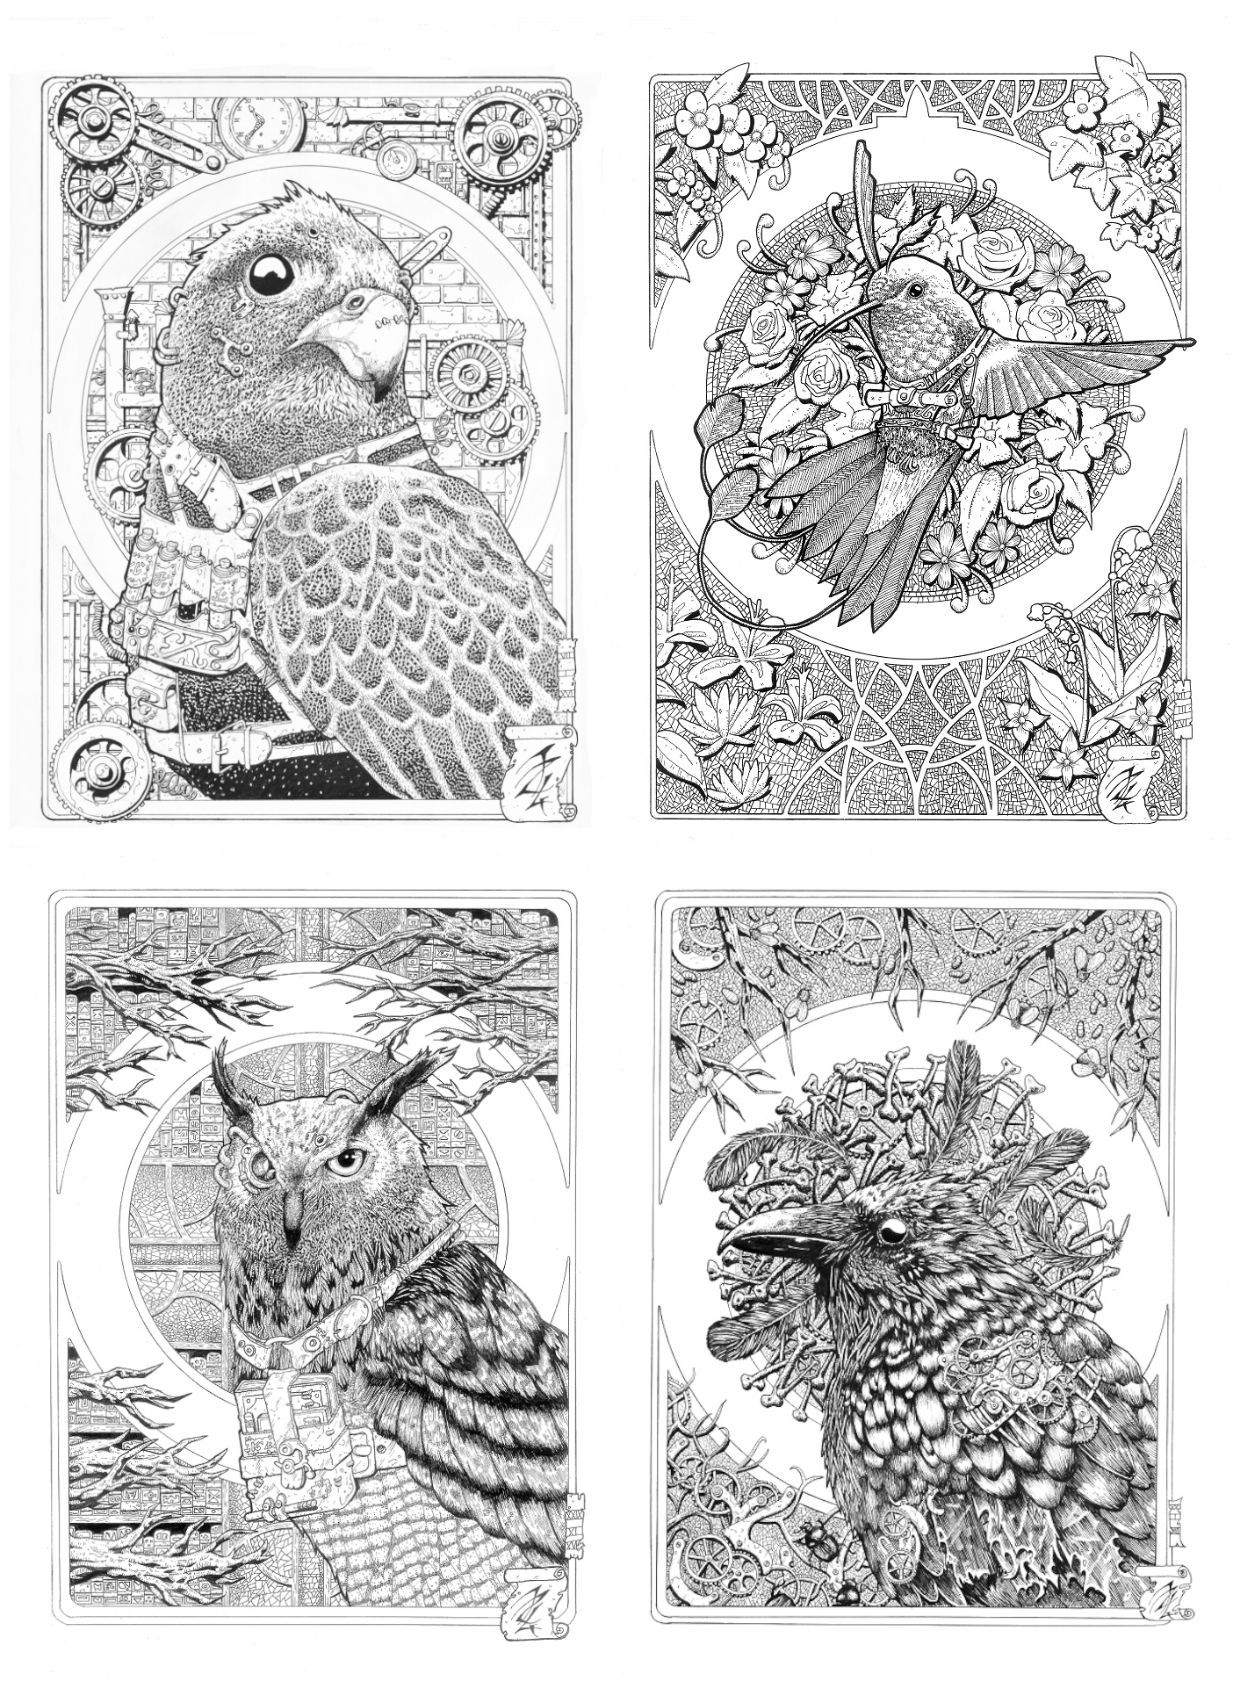 4 dessins d'oiseaux de style steampunk/art nouveau. En haut à gauche un faucon, en haut à droite un colibri, en bas à gauche un hibou et en bas à droite un corbeau